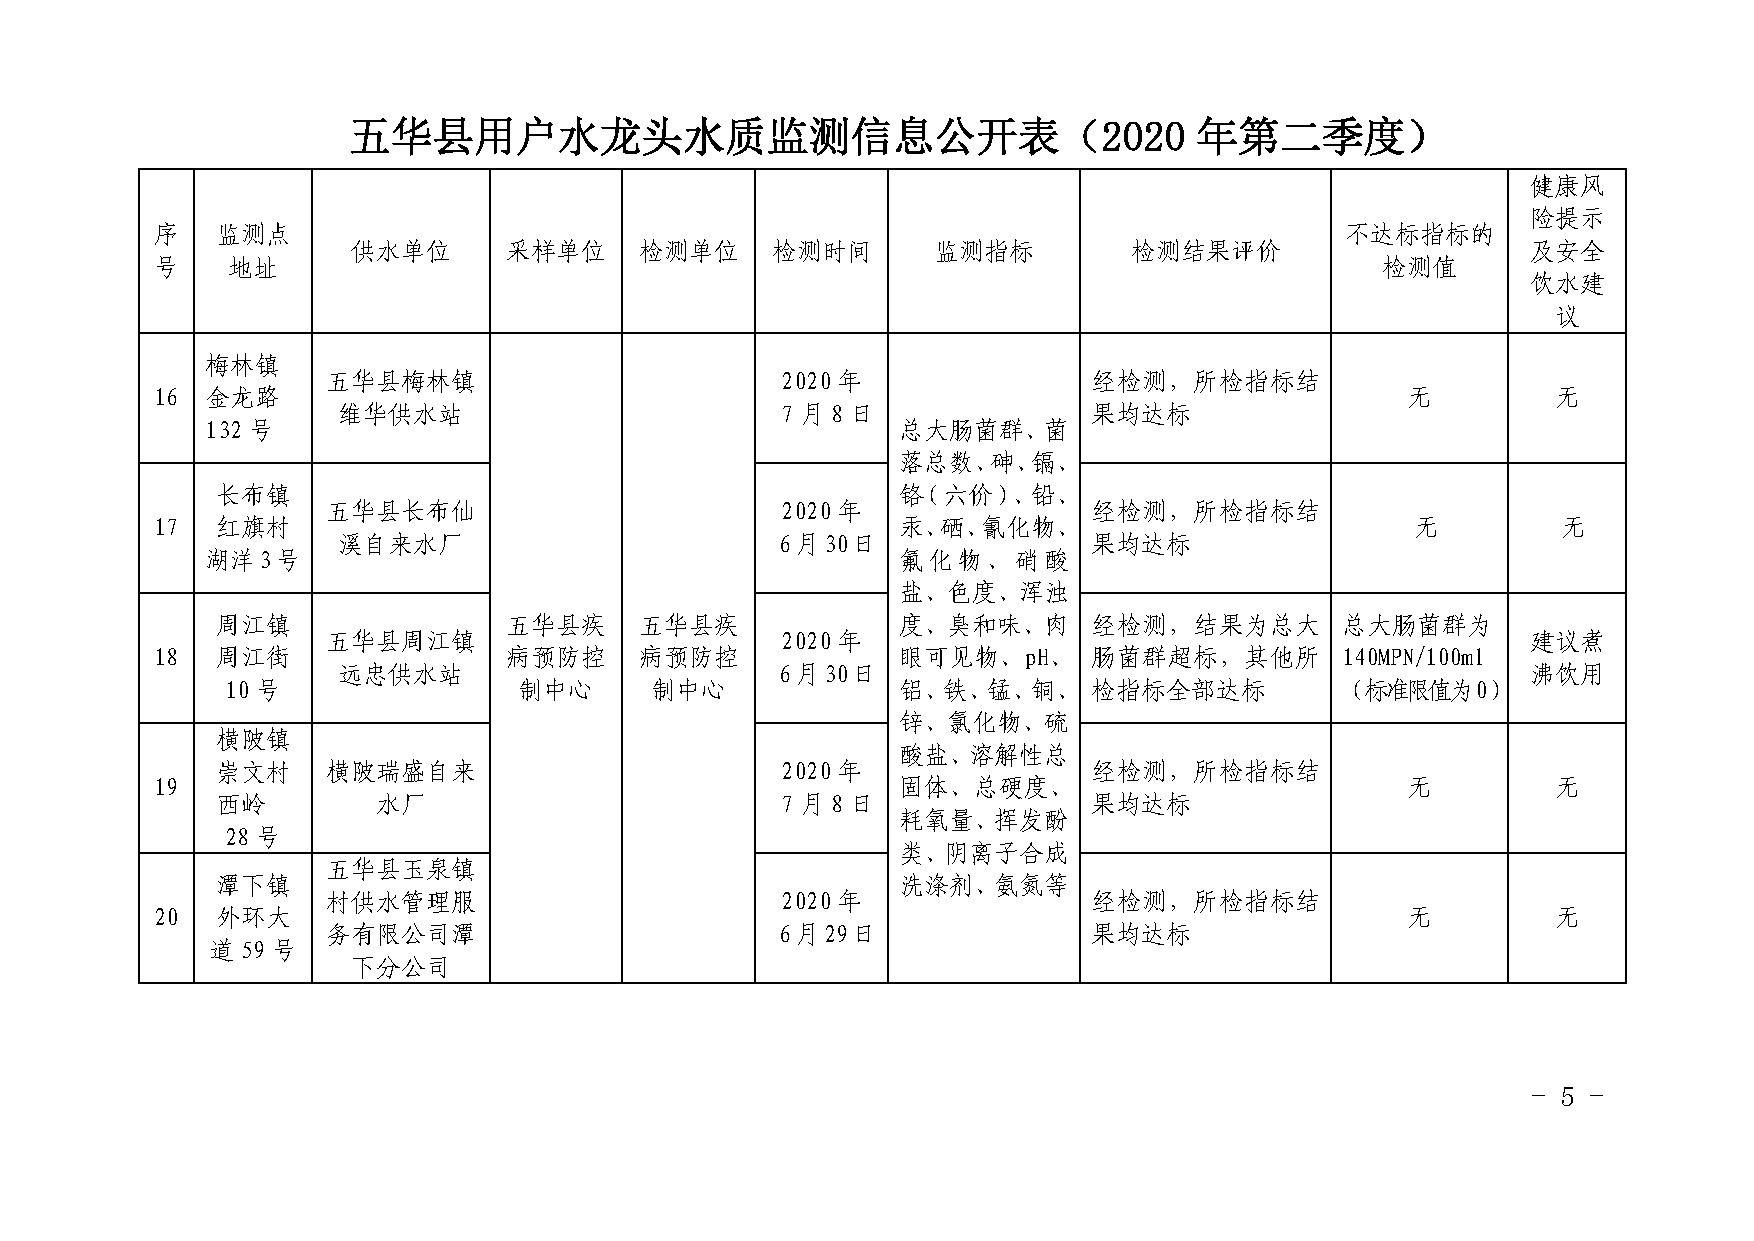 关于五华县2020年第二季度用户水龙头水质监测结果的报告_页面_5.png